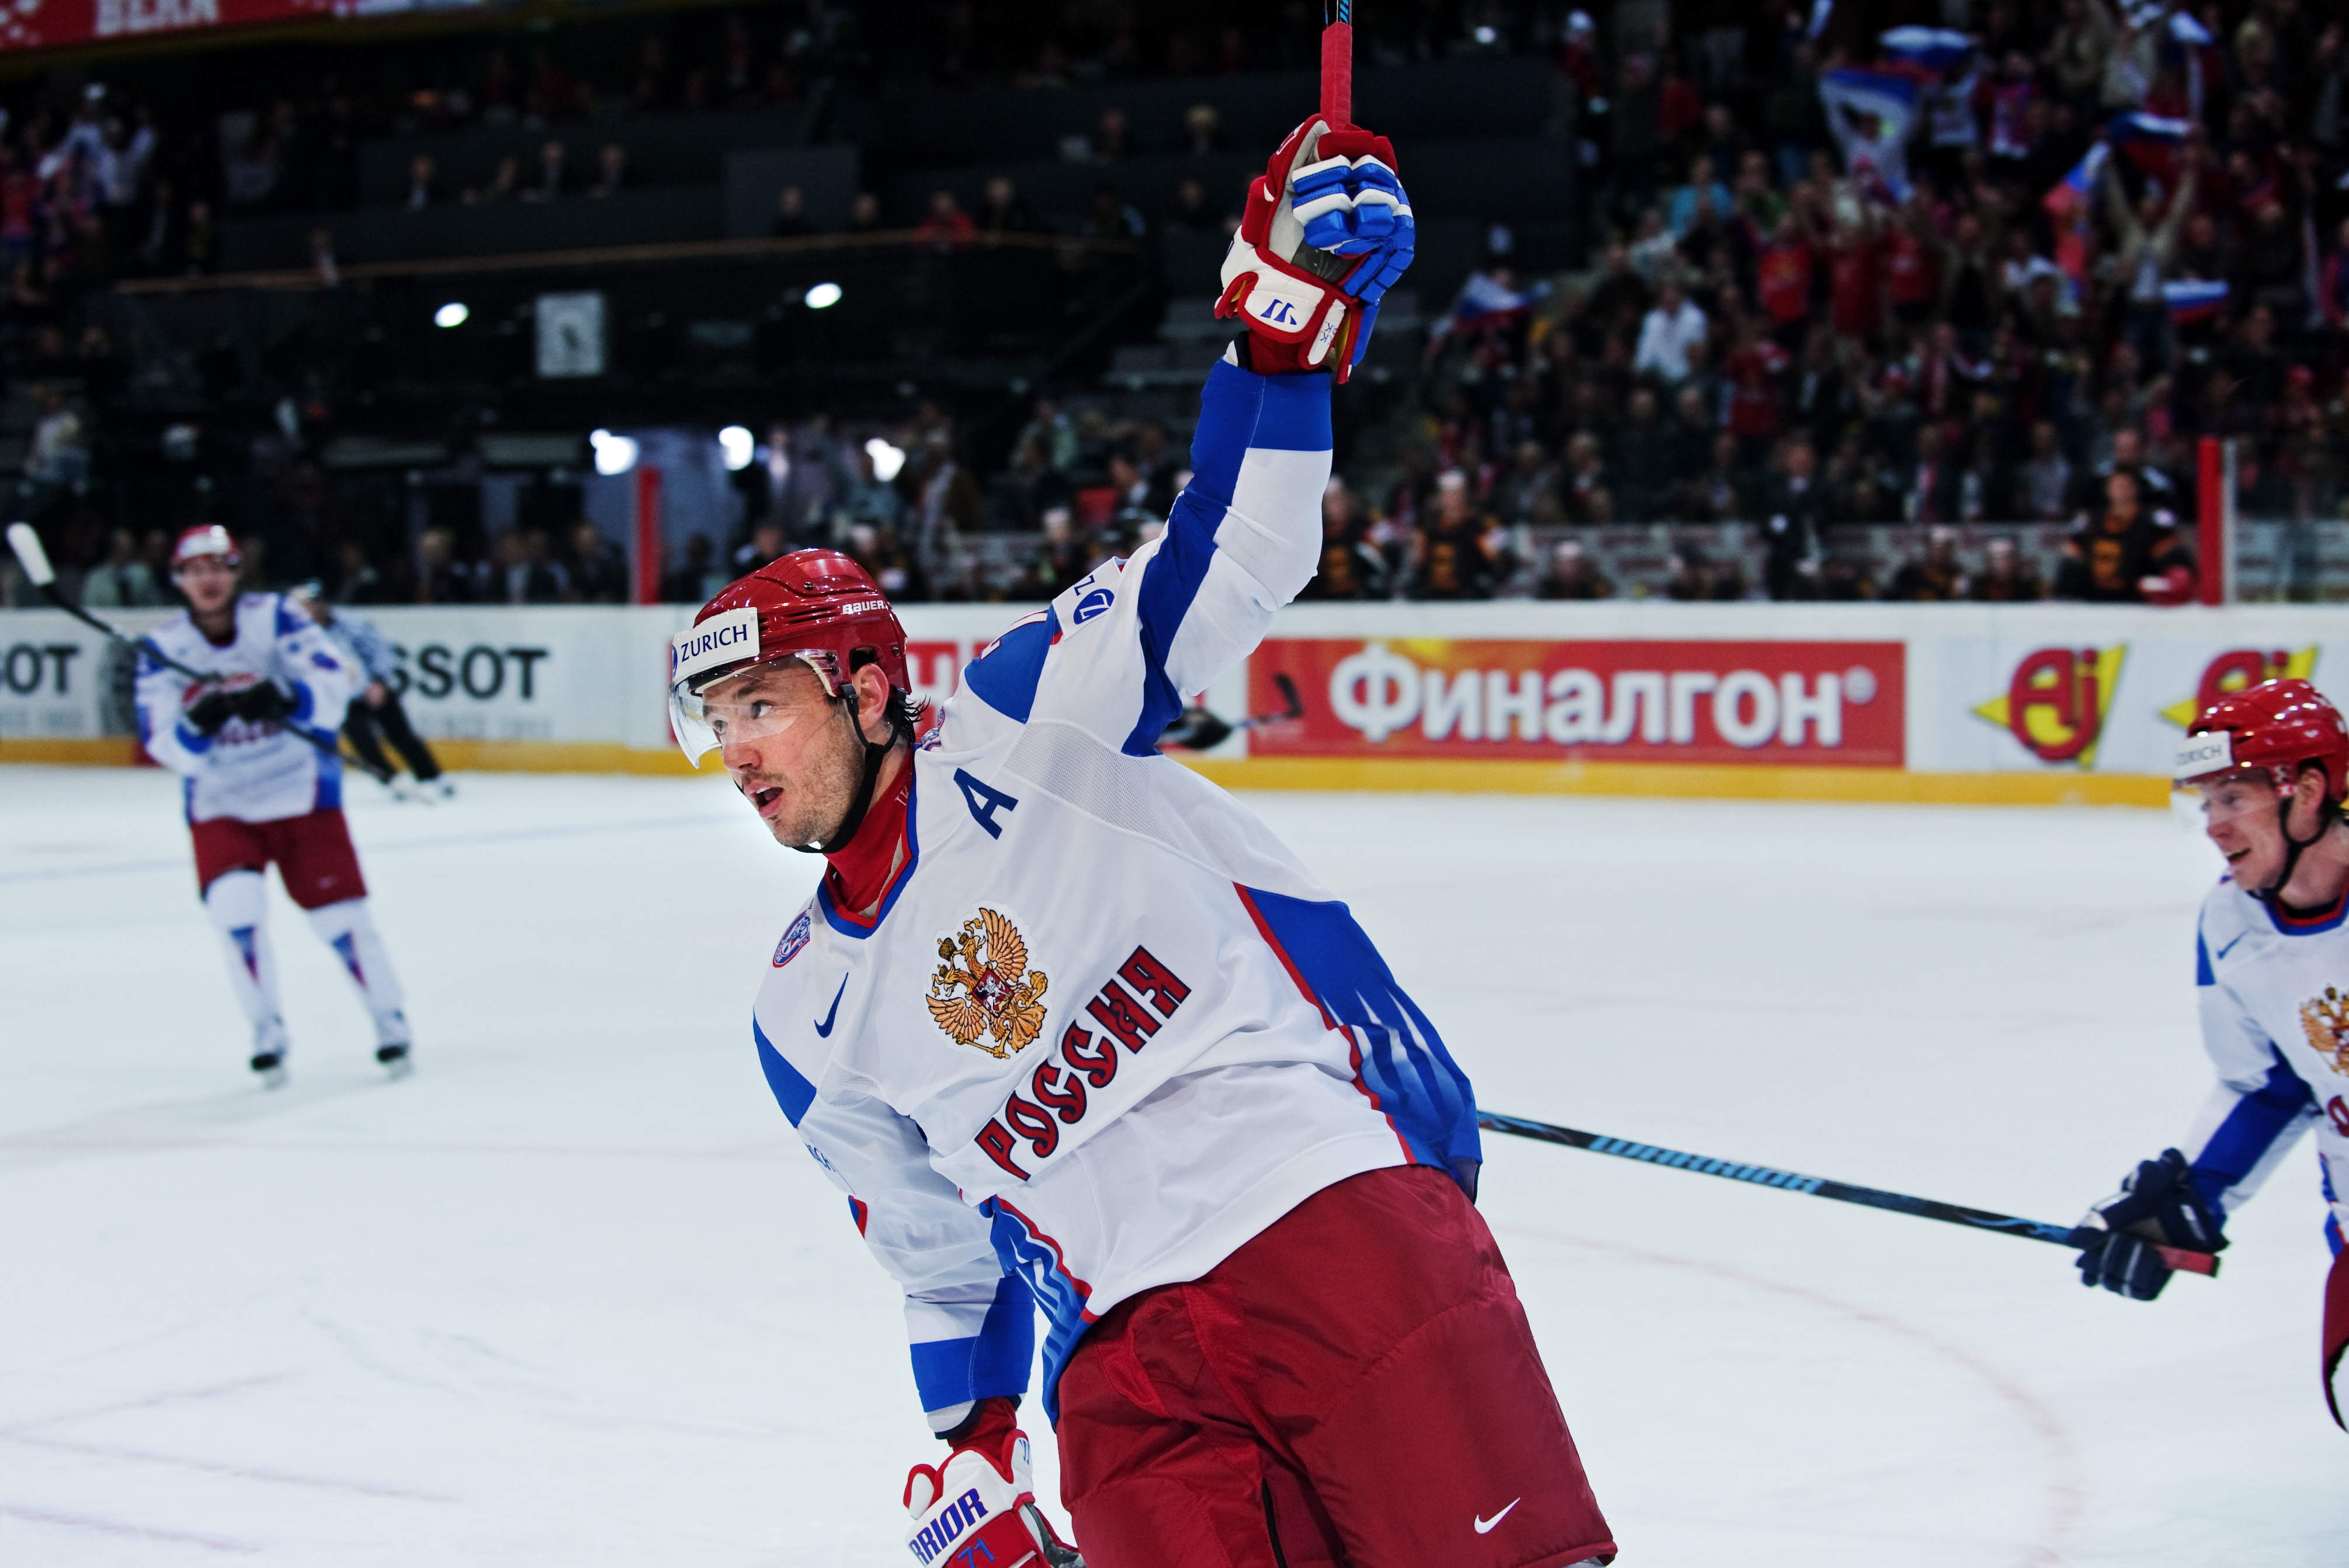 Ilya Kovalchuk, nhl, KHL